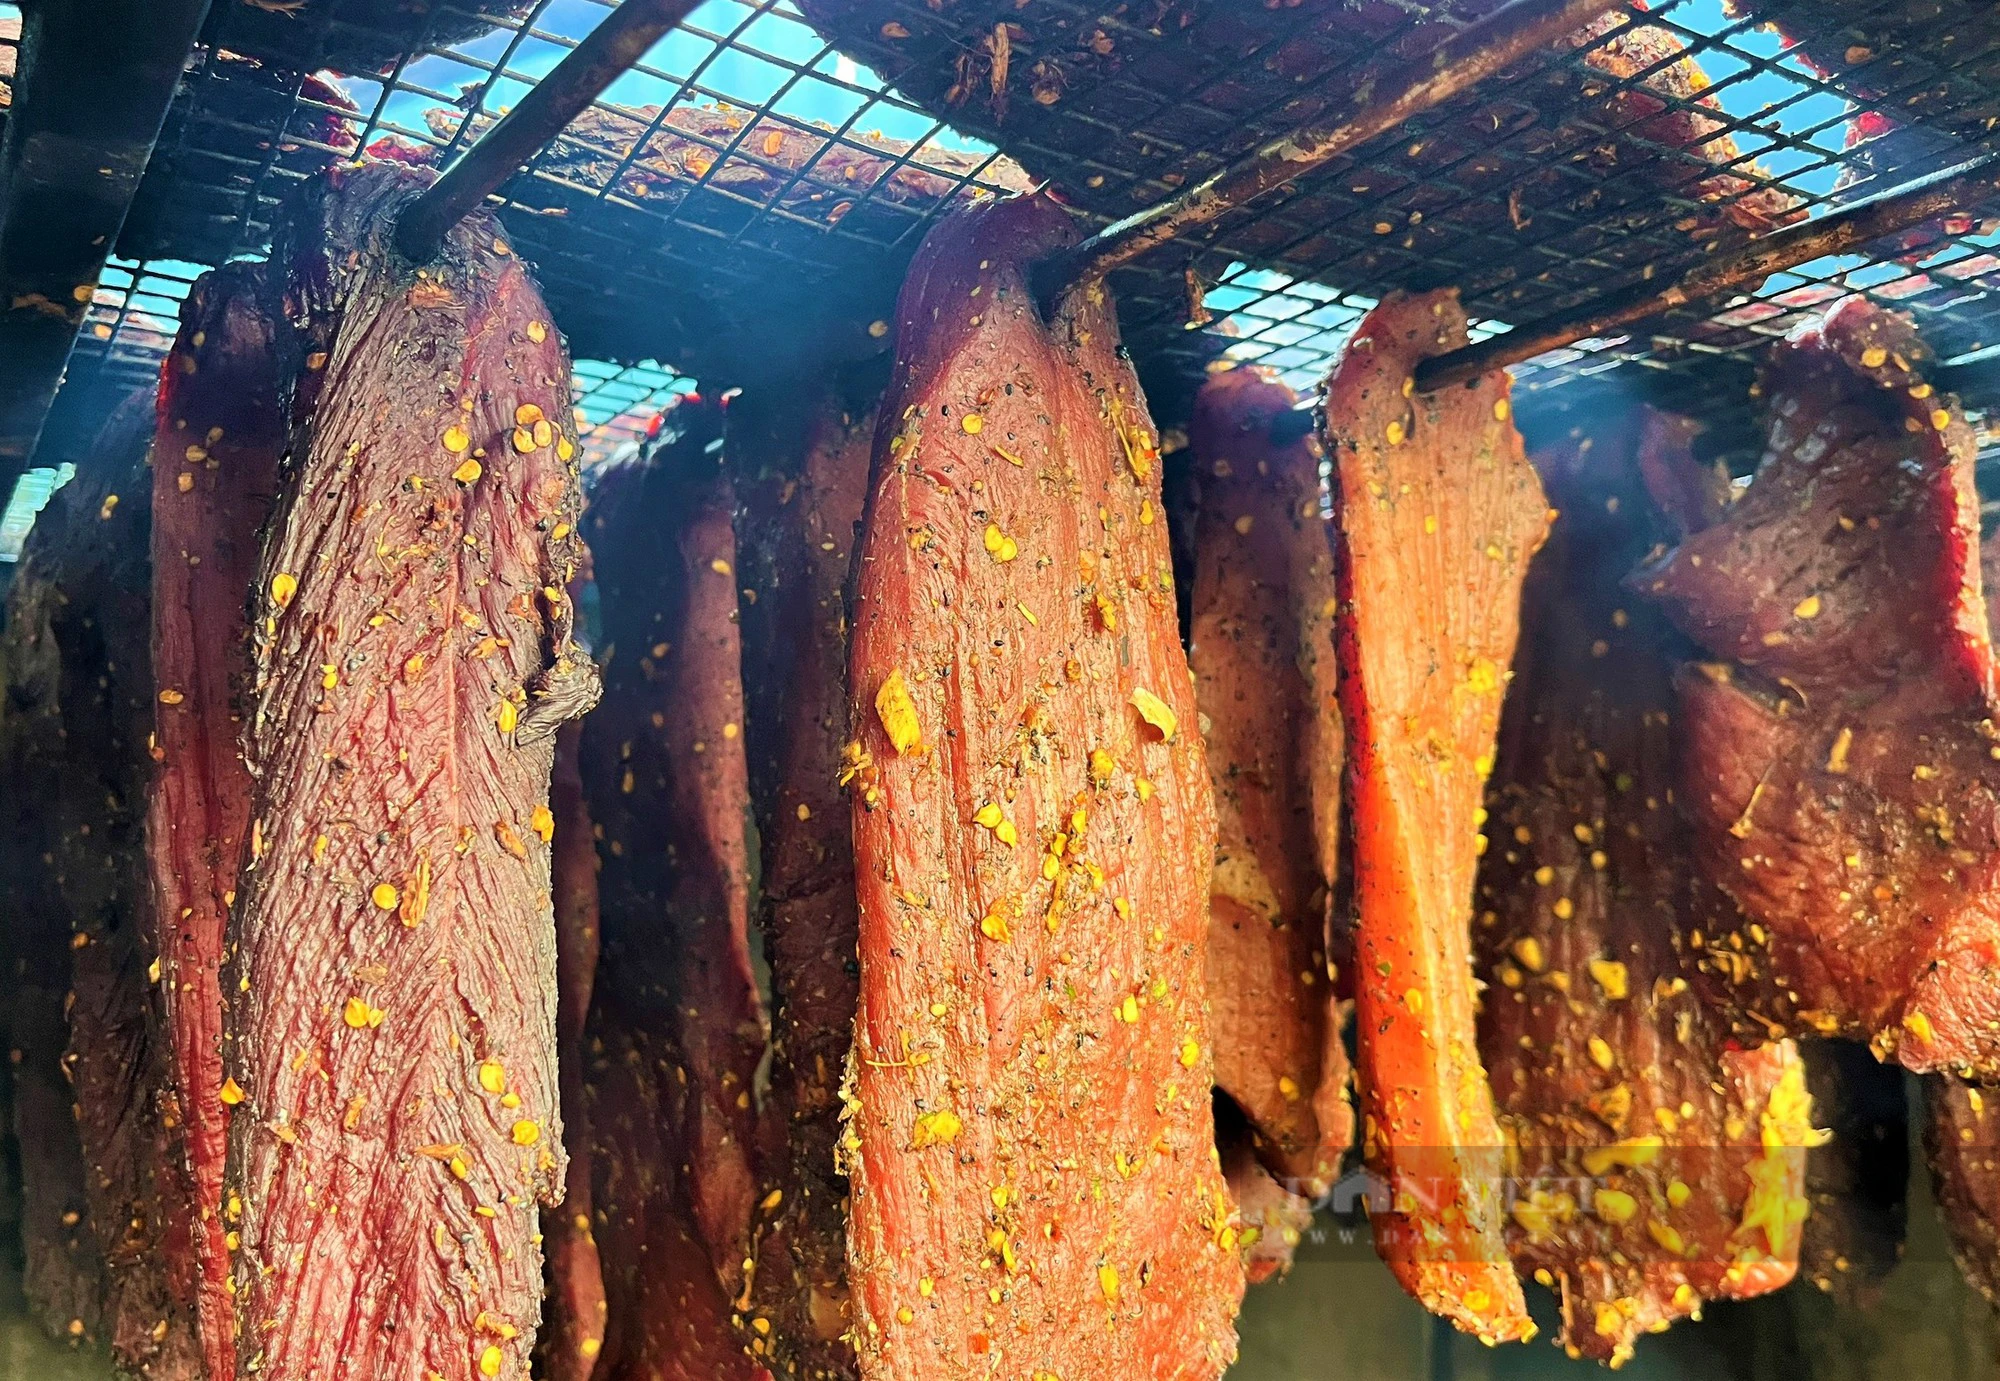 Bò giàng, thịt lợn gác bếp, vố số đặc sản vạn người mê của miền núi Nghệ An xuống phố bán dịp Tết- Ảnh 6.